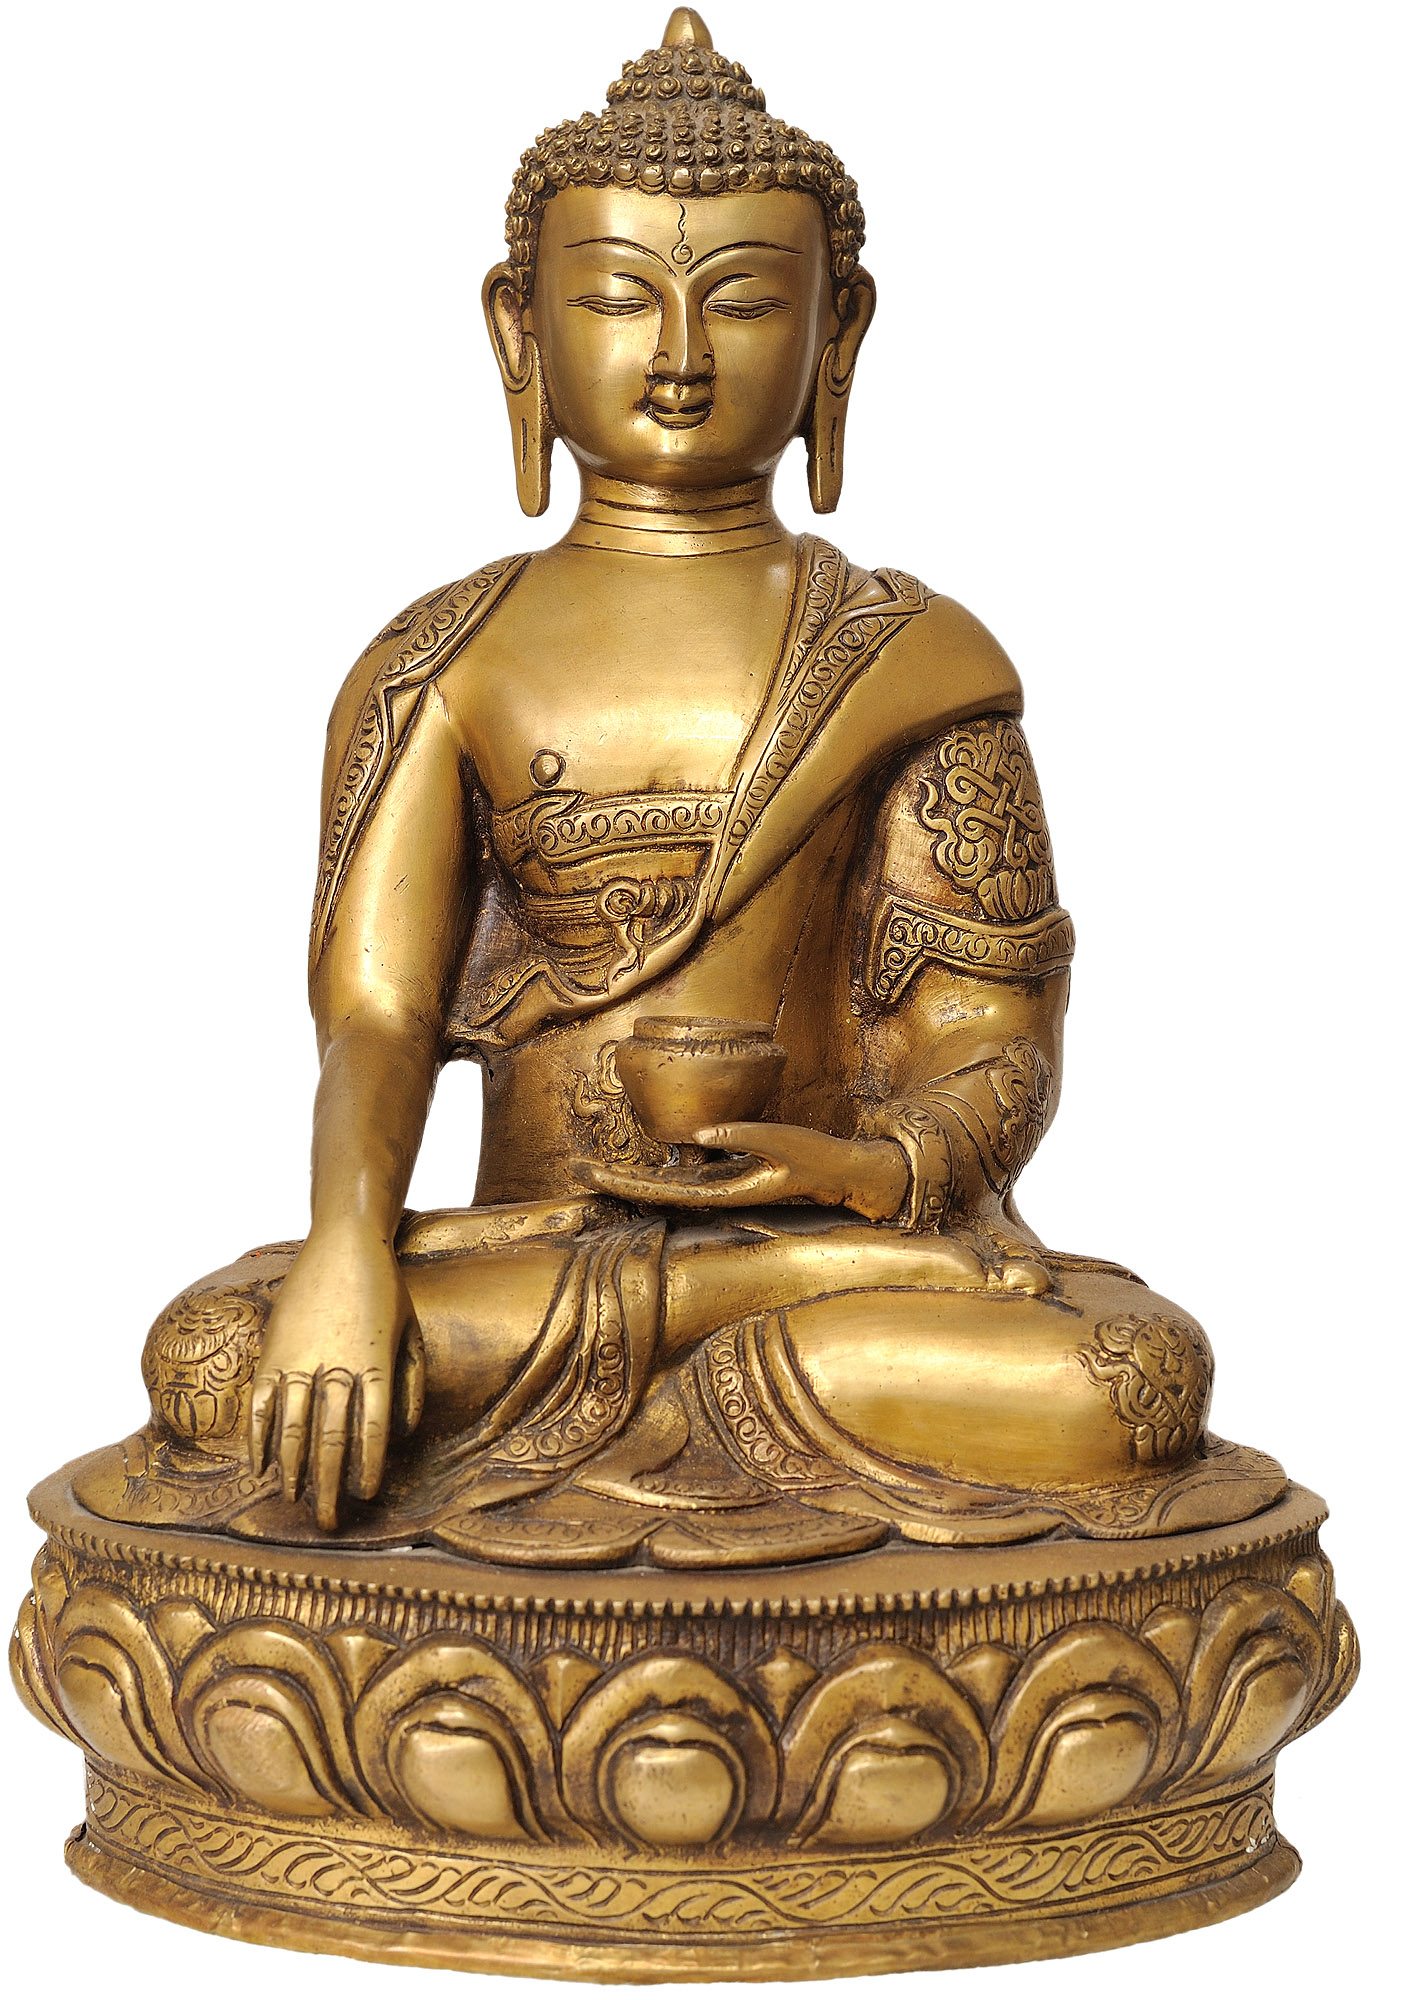 Brass Singing Bowl Inside The Figure of Buddha in Bhumisparsha Mudra ...